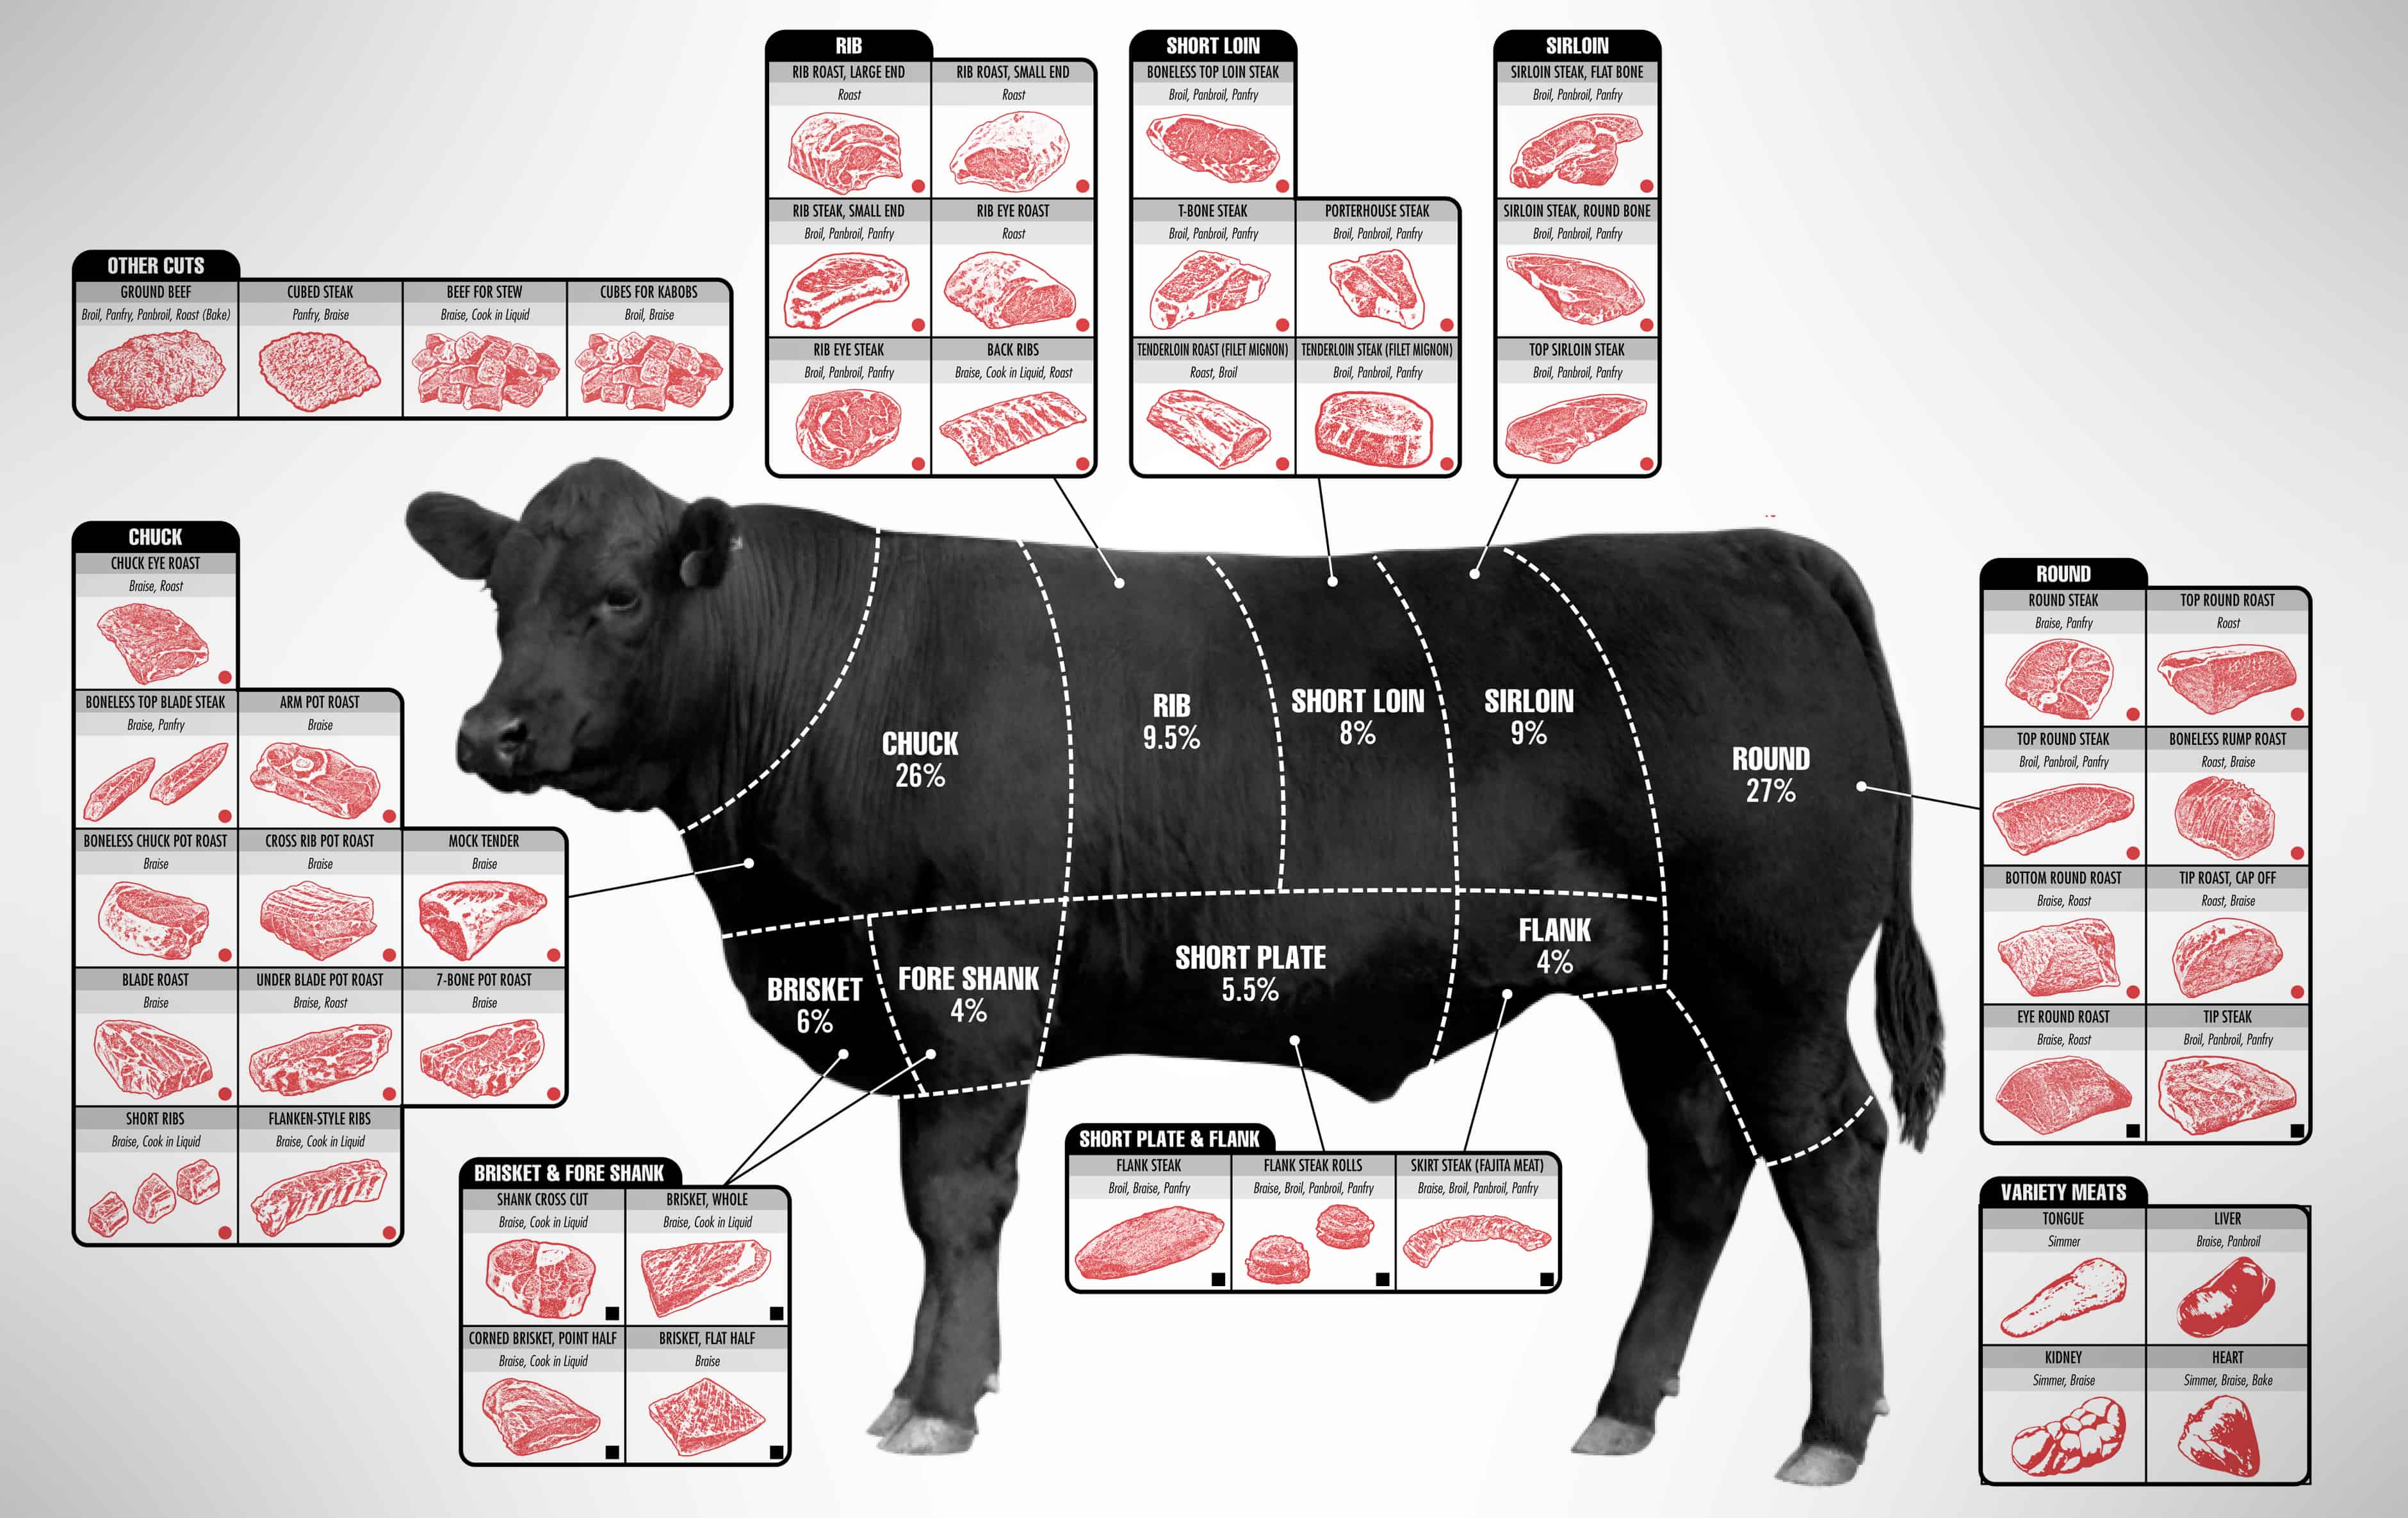 Meat Cuts - Types of Steak